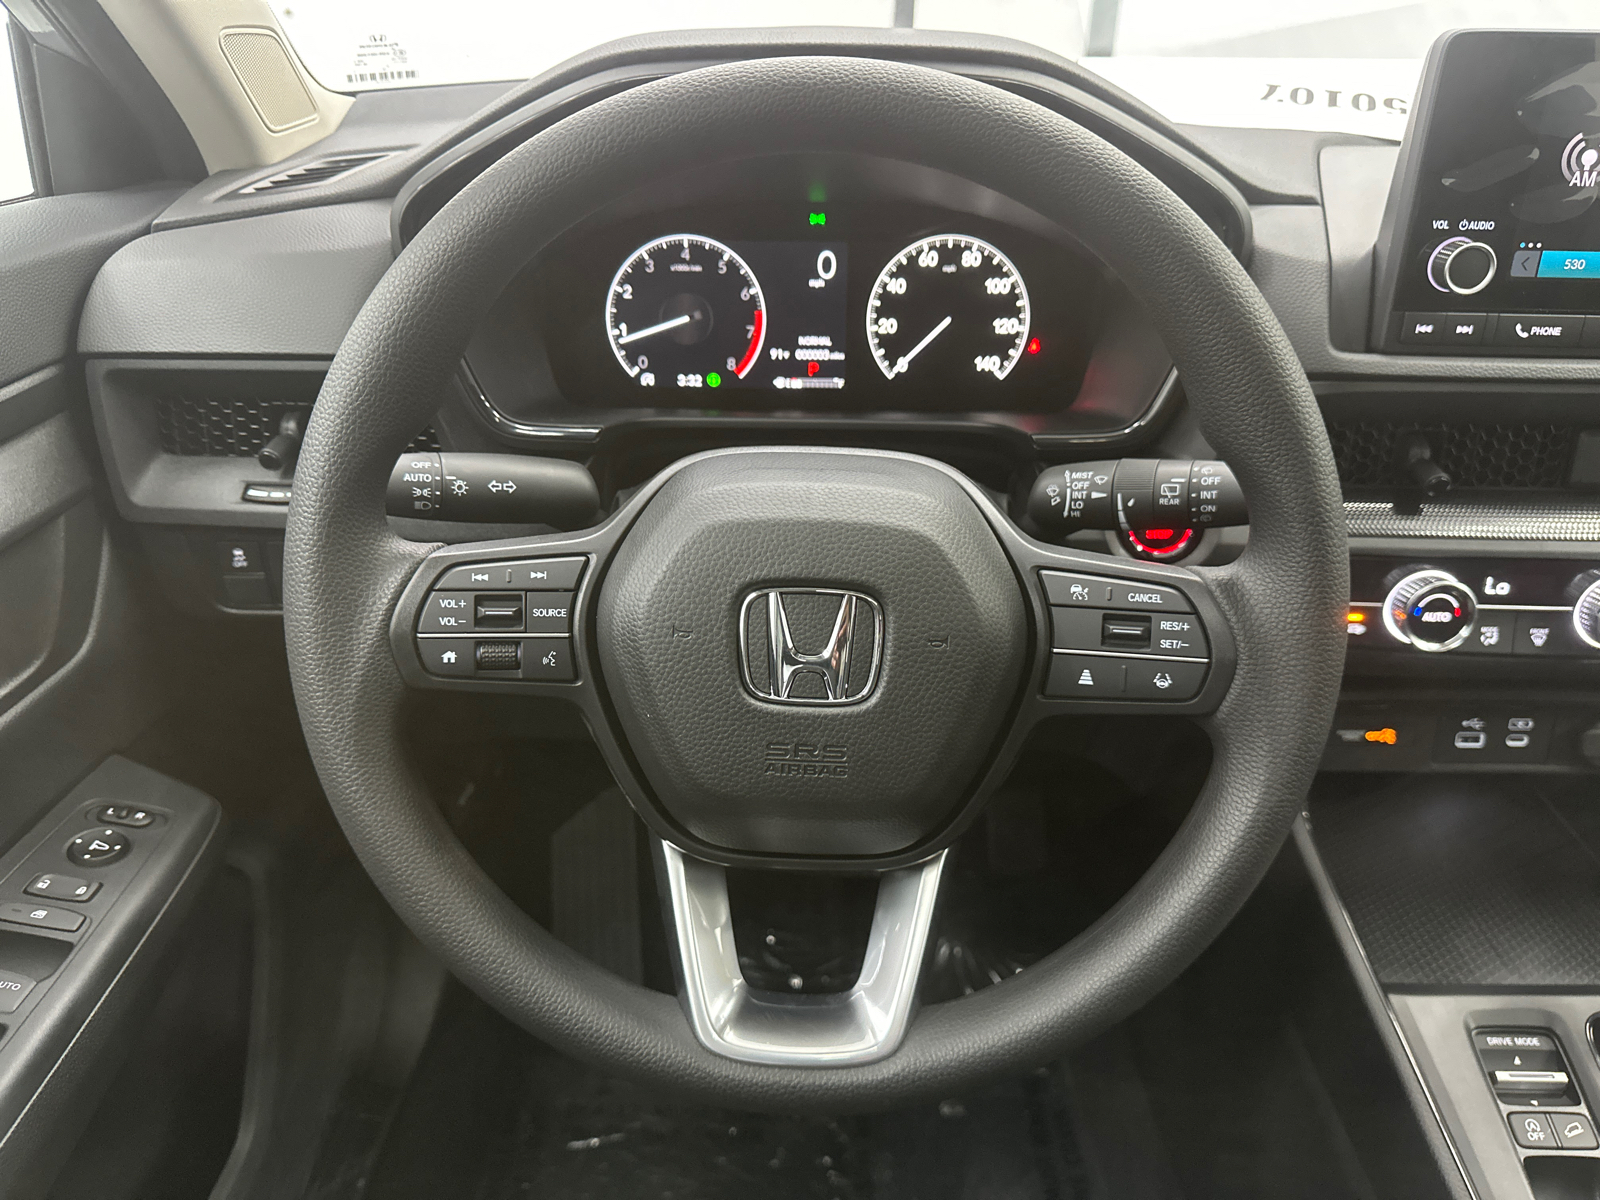 2025 Honda CR-V EX 26